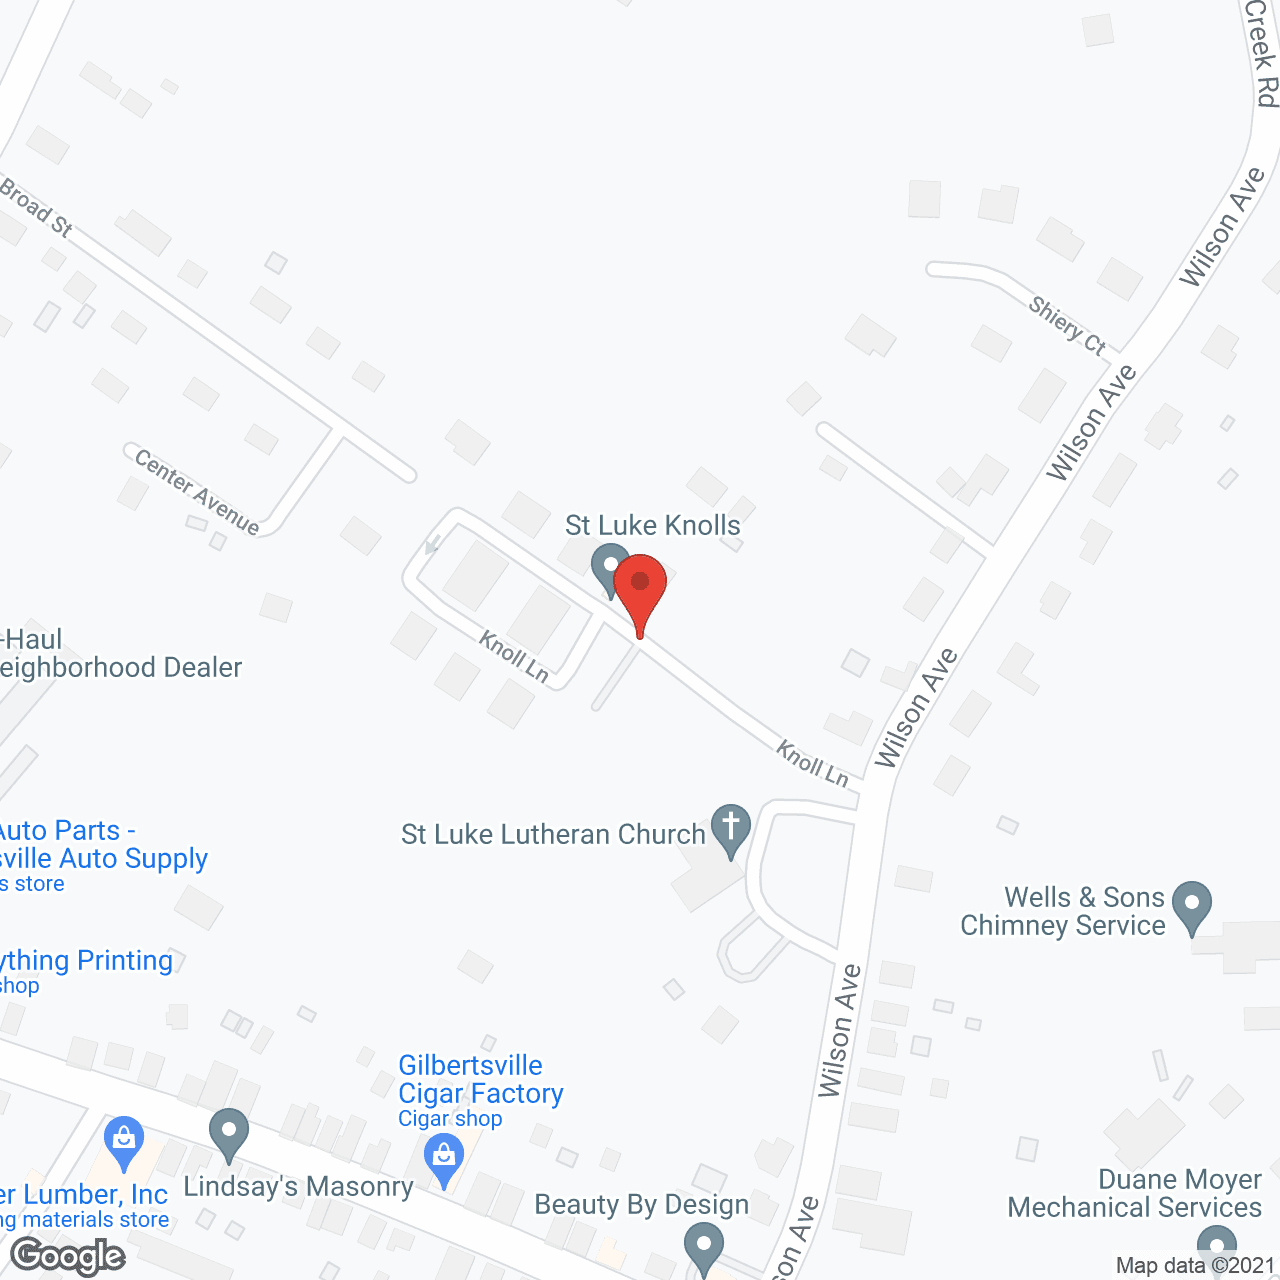 St Luke Knolls Inc in google map